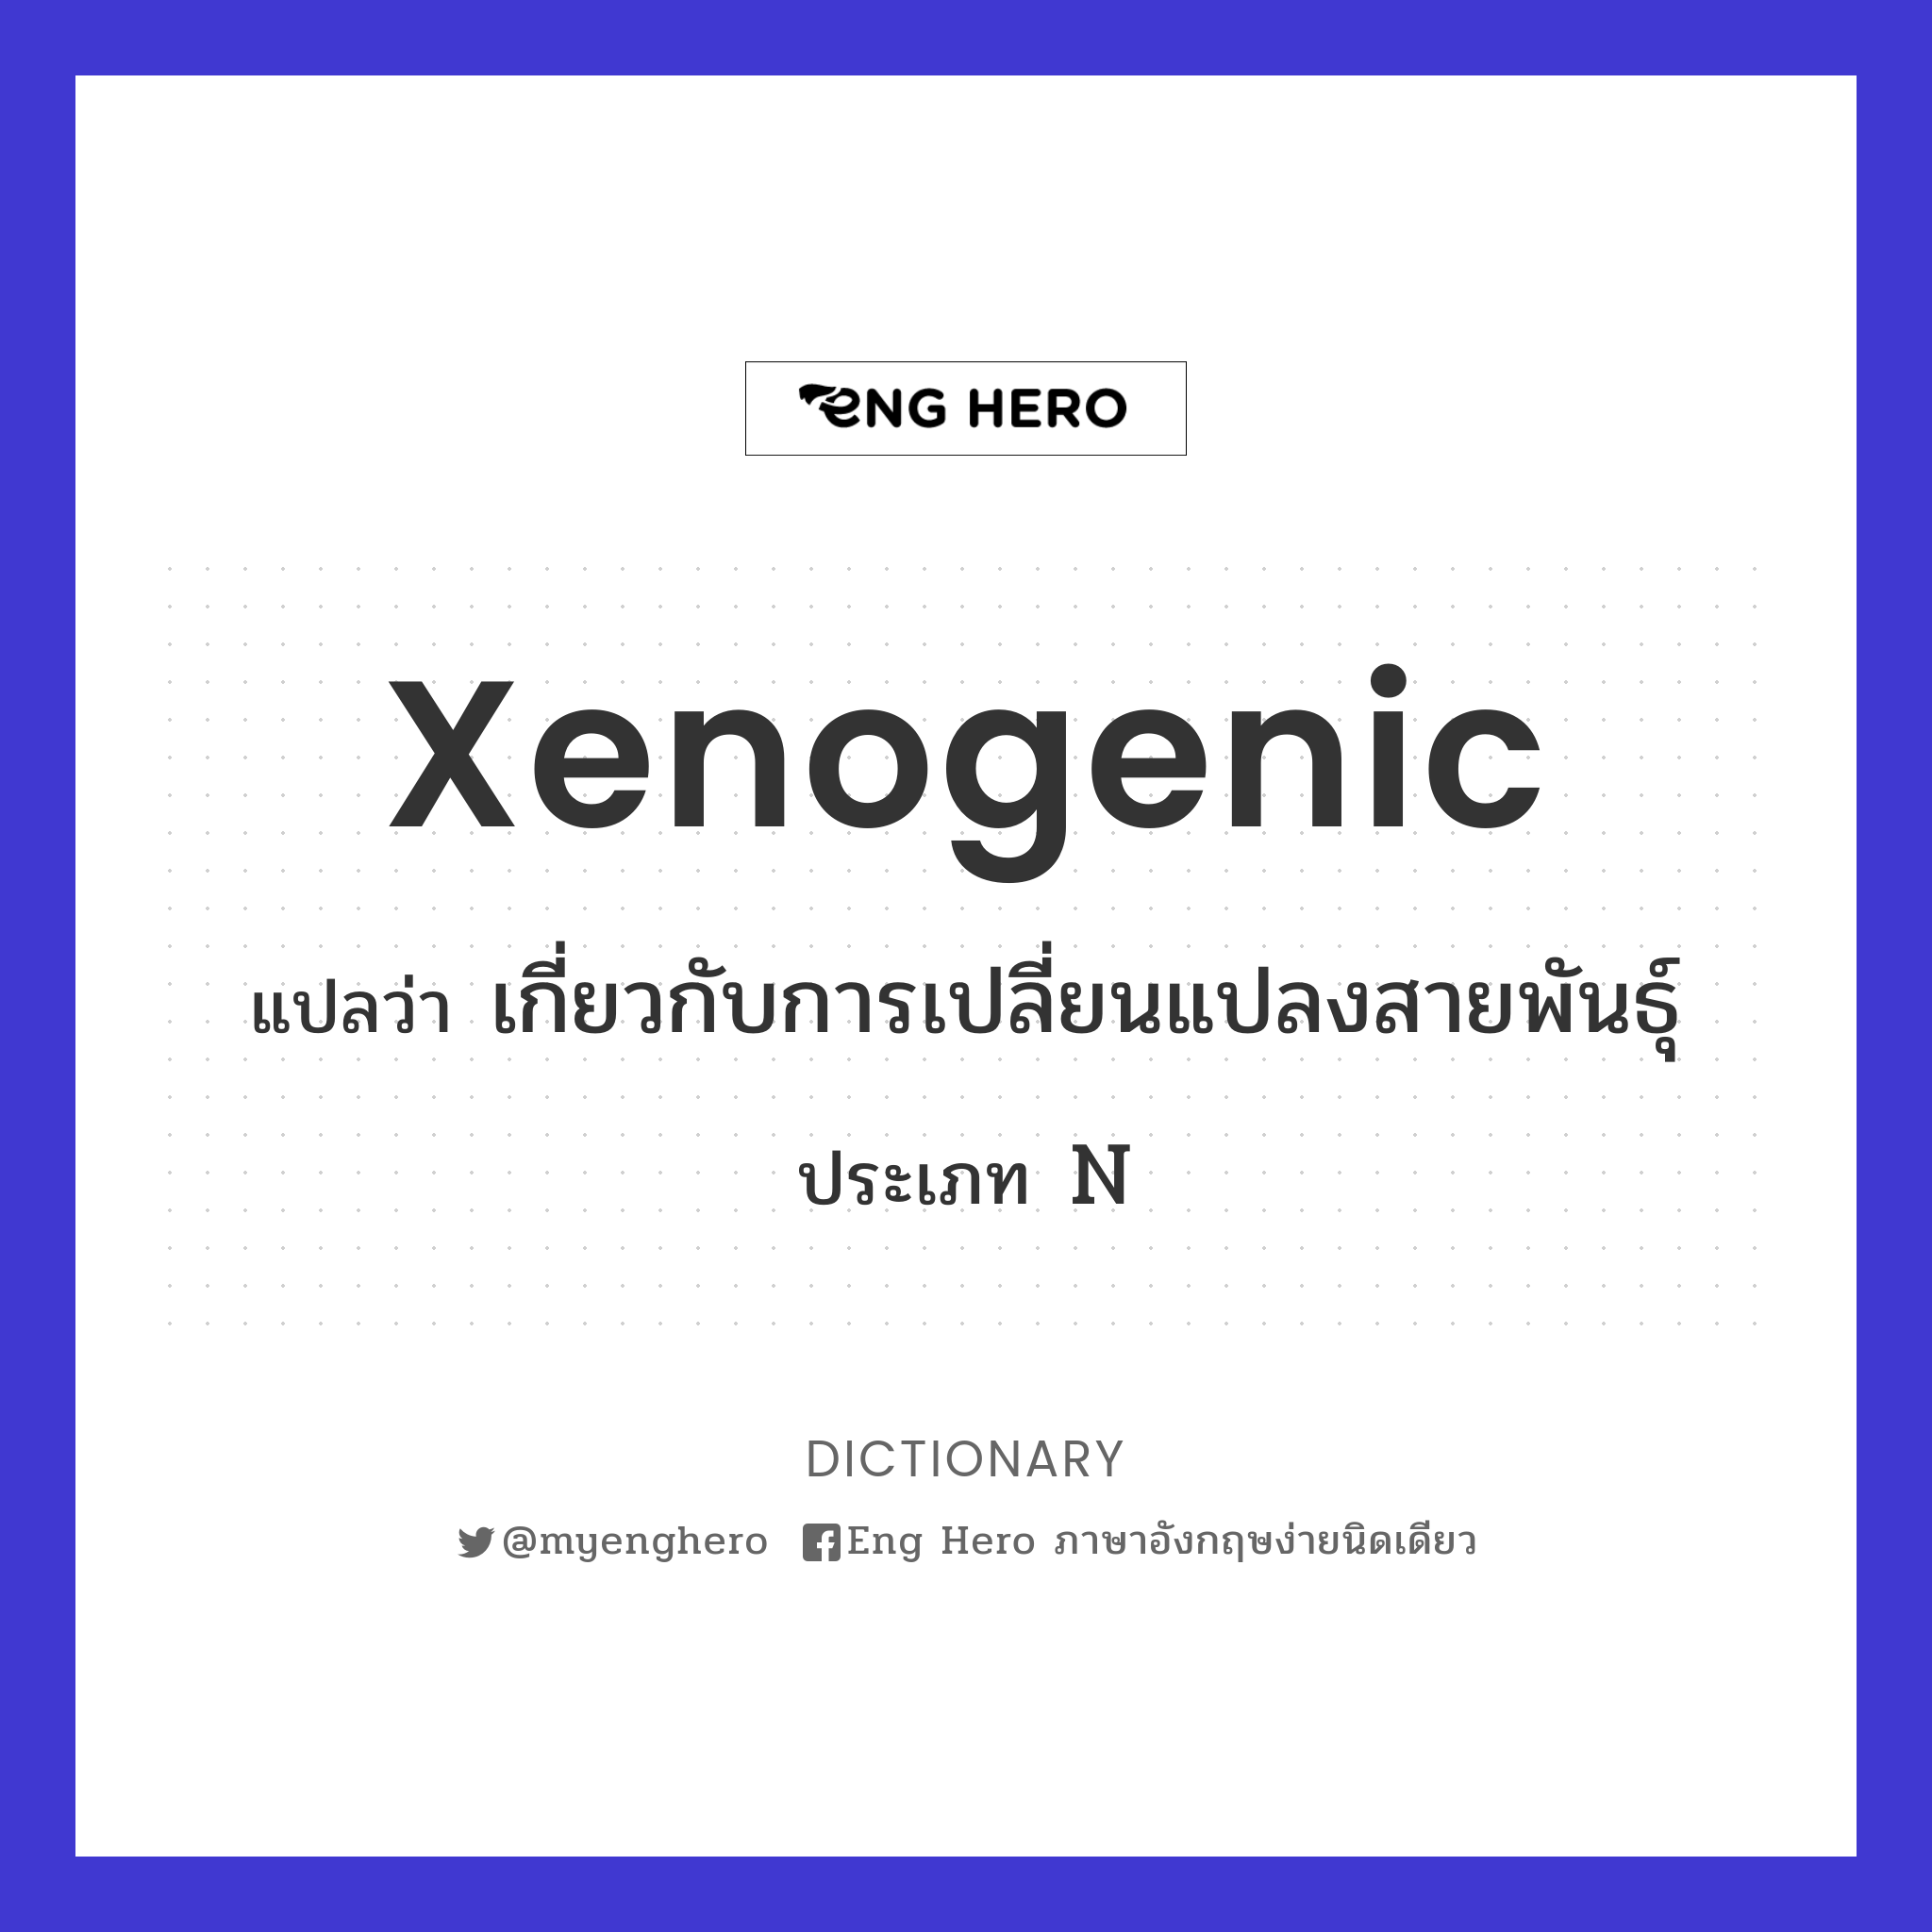 xenogenic